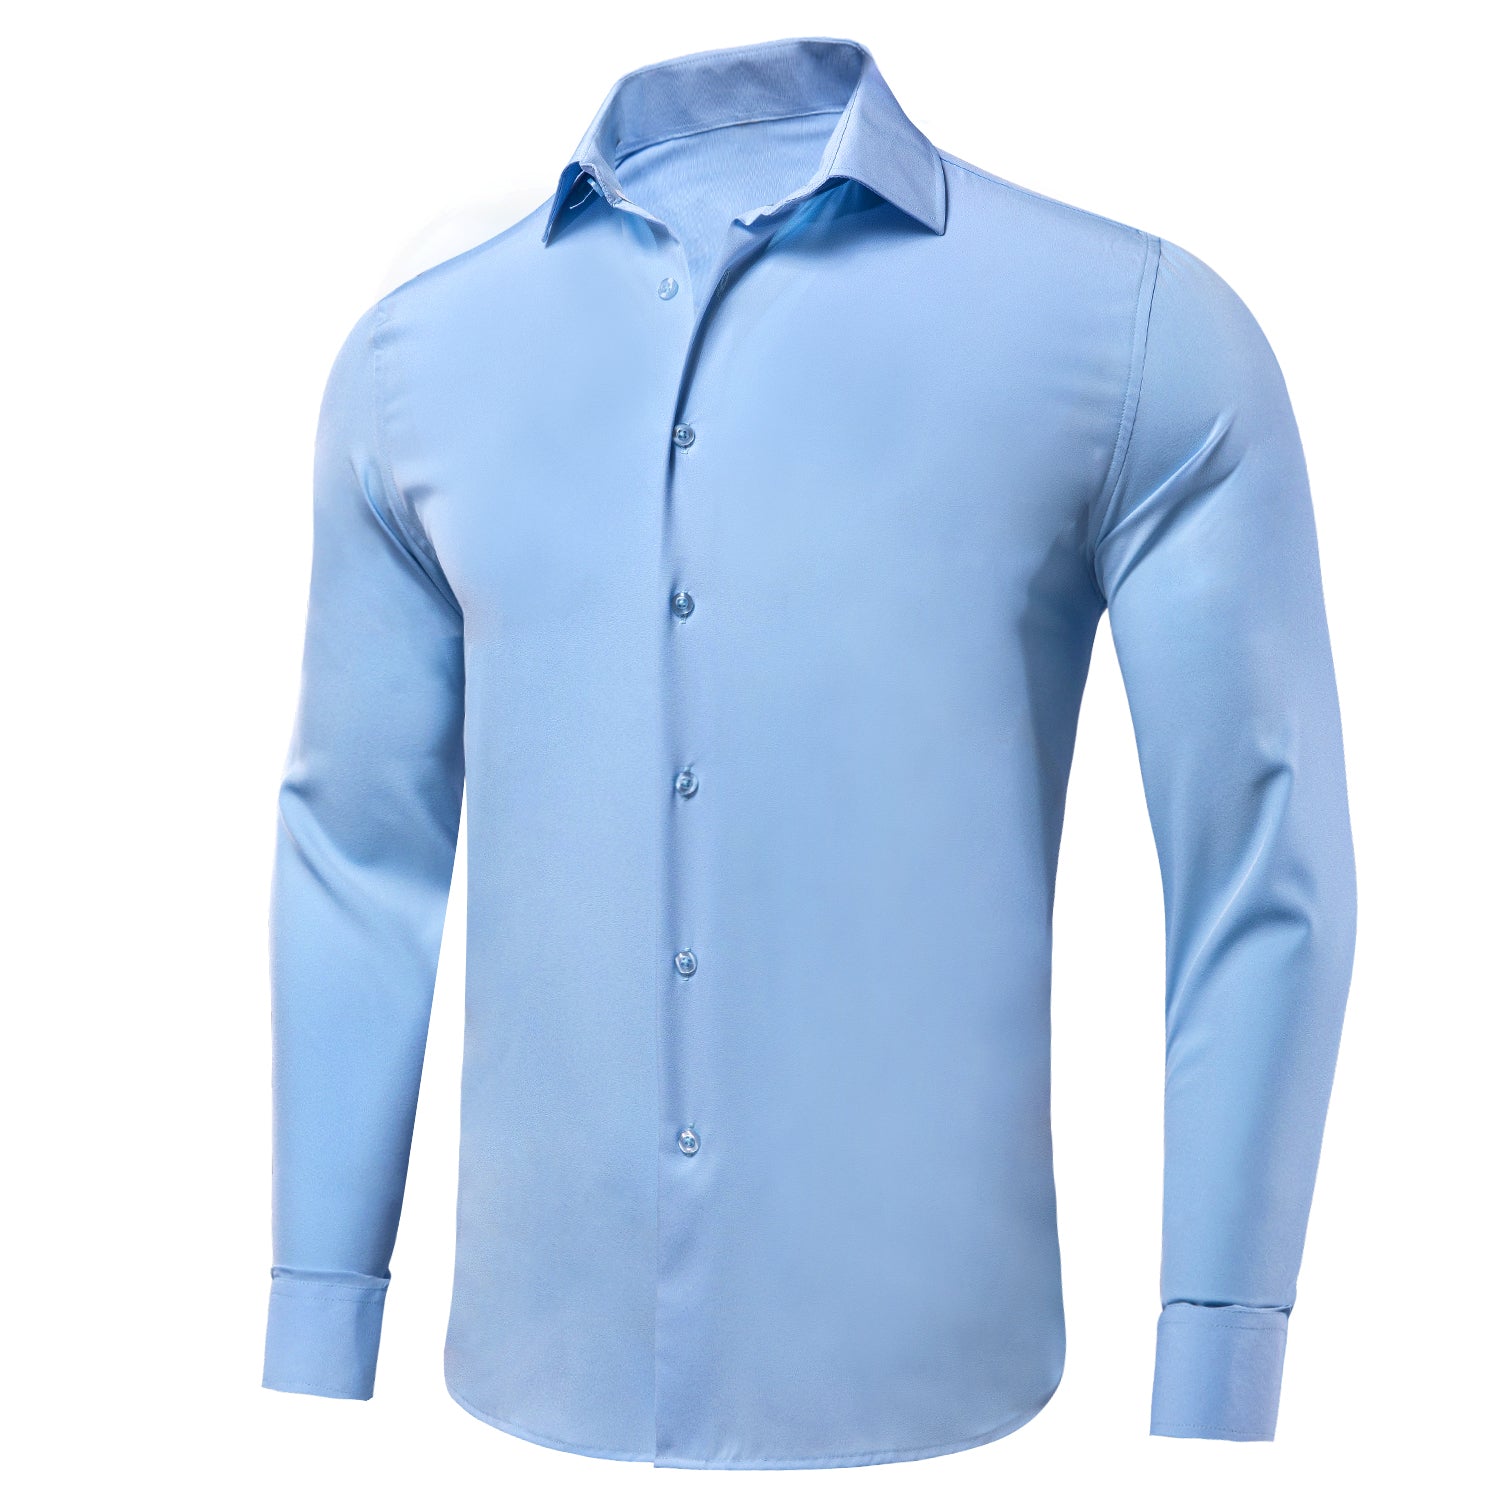  Dress Shirt Sky Blue Stretch Men's Long Sleeve Shirt